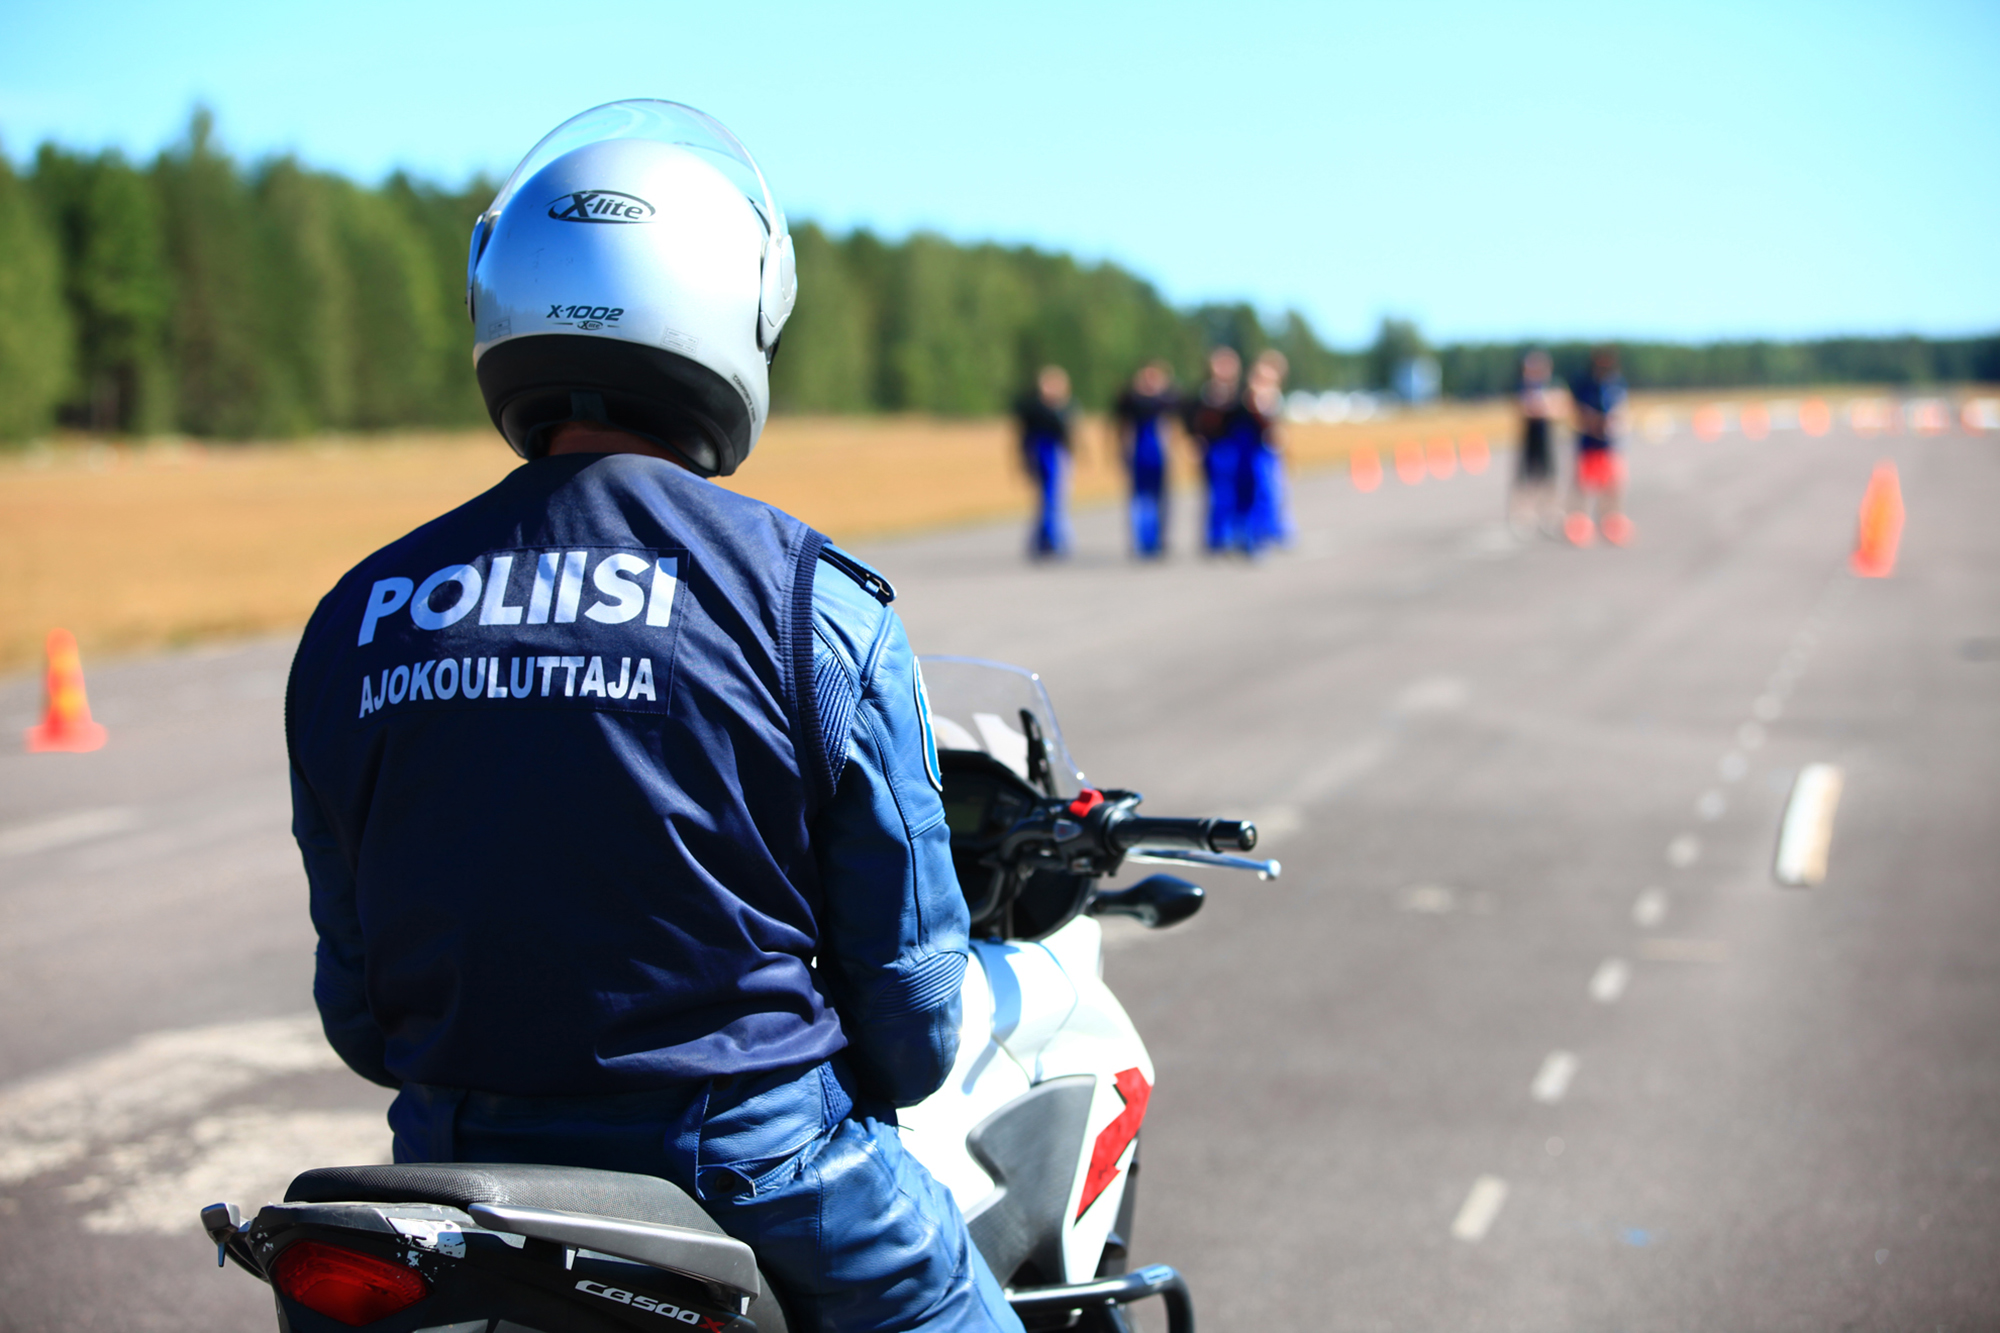 Ajokouluttaja poliisimoottoripyörän päällä selkä kameraan päin, taustalla ajorataa.